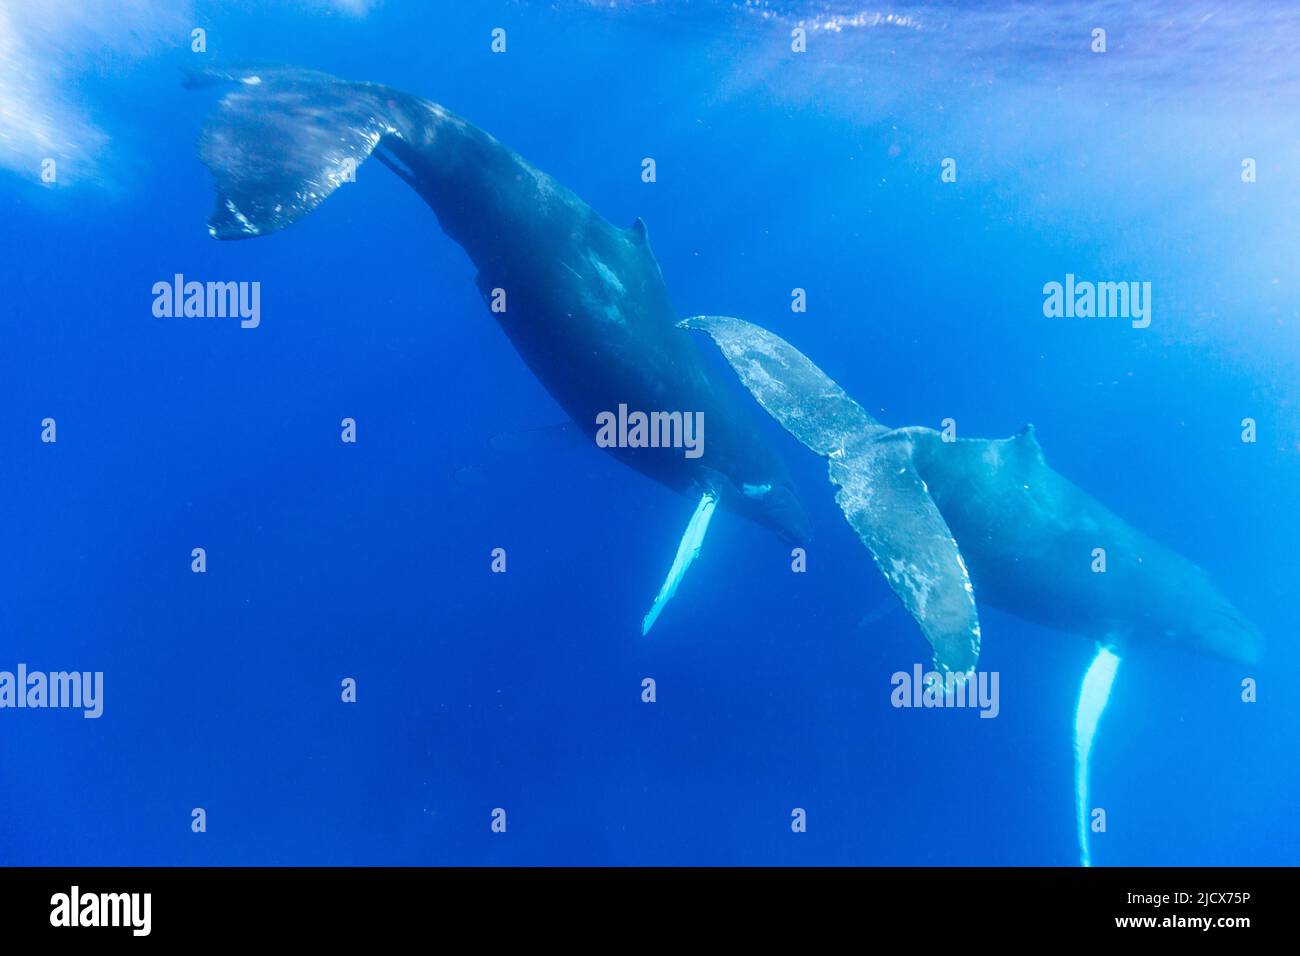 Un par de ballenas jorobadas (Megaptera novaeangliae), bajo el agua en el Banco de Plata, República Dominicana, Antillas Mayores, Caribe, Centroamérica Foto de stock